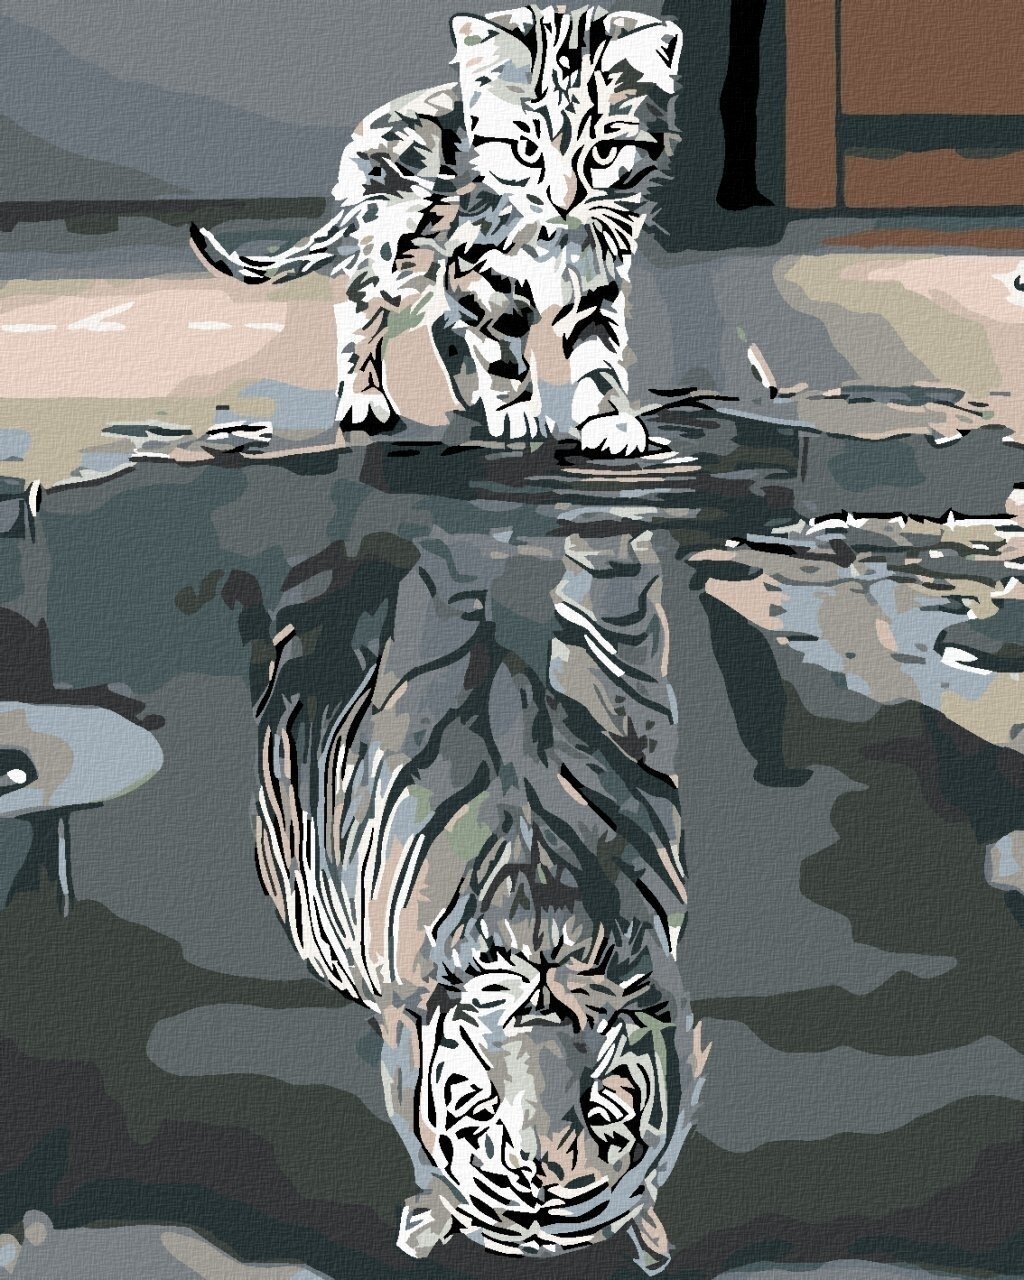 Malowanie diamentami Zuty Kotek lub Tygrys